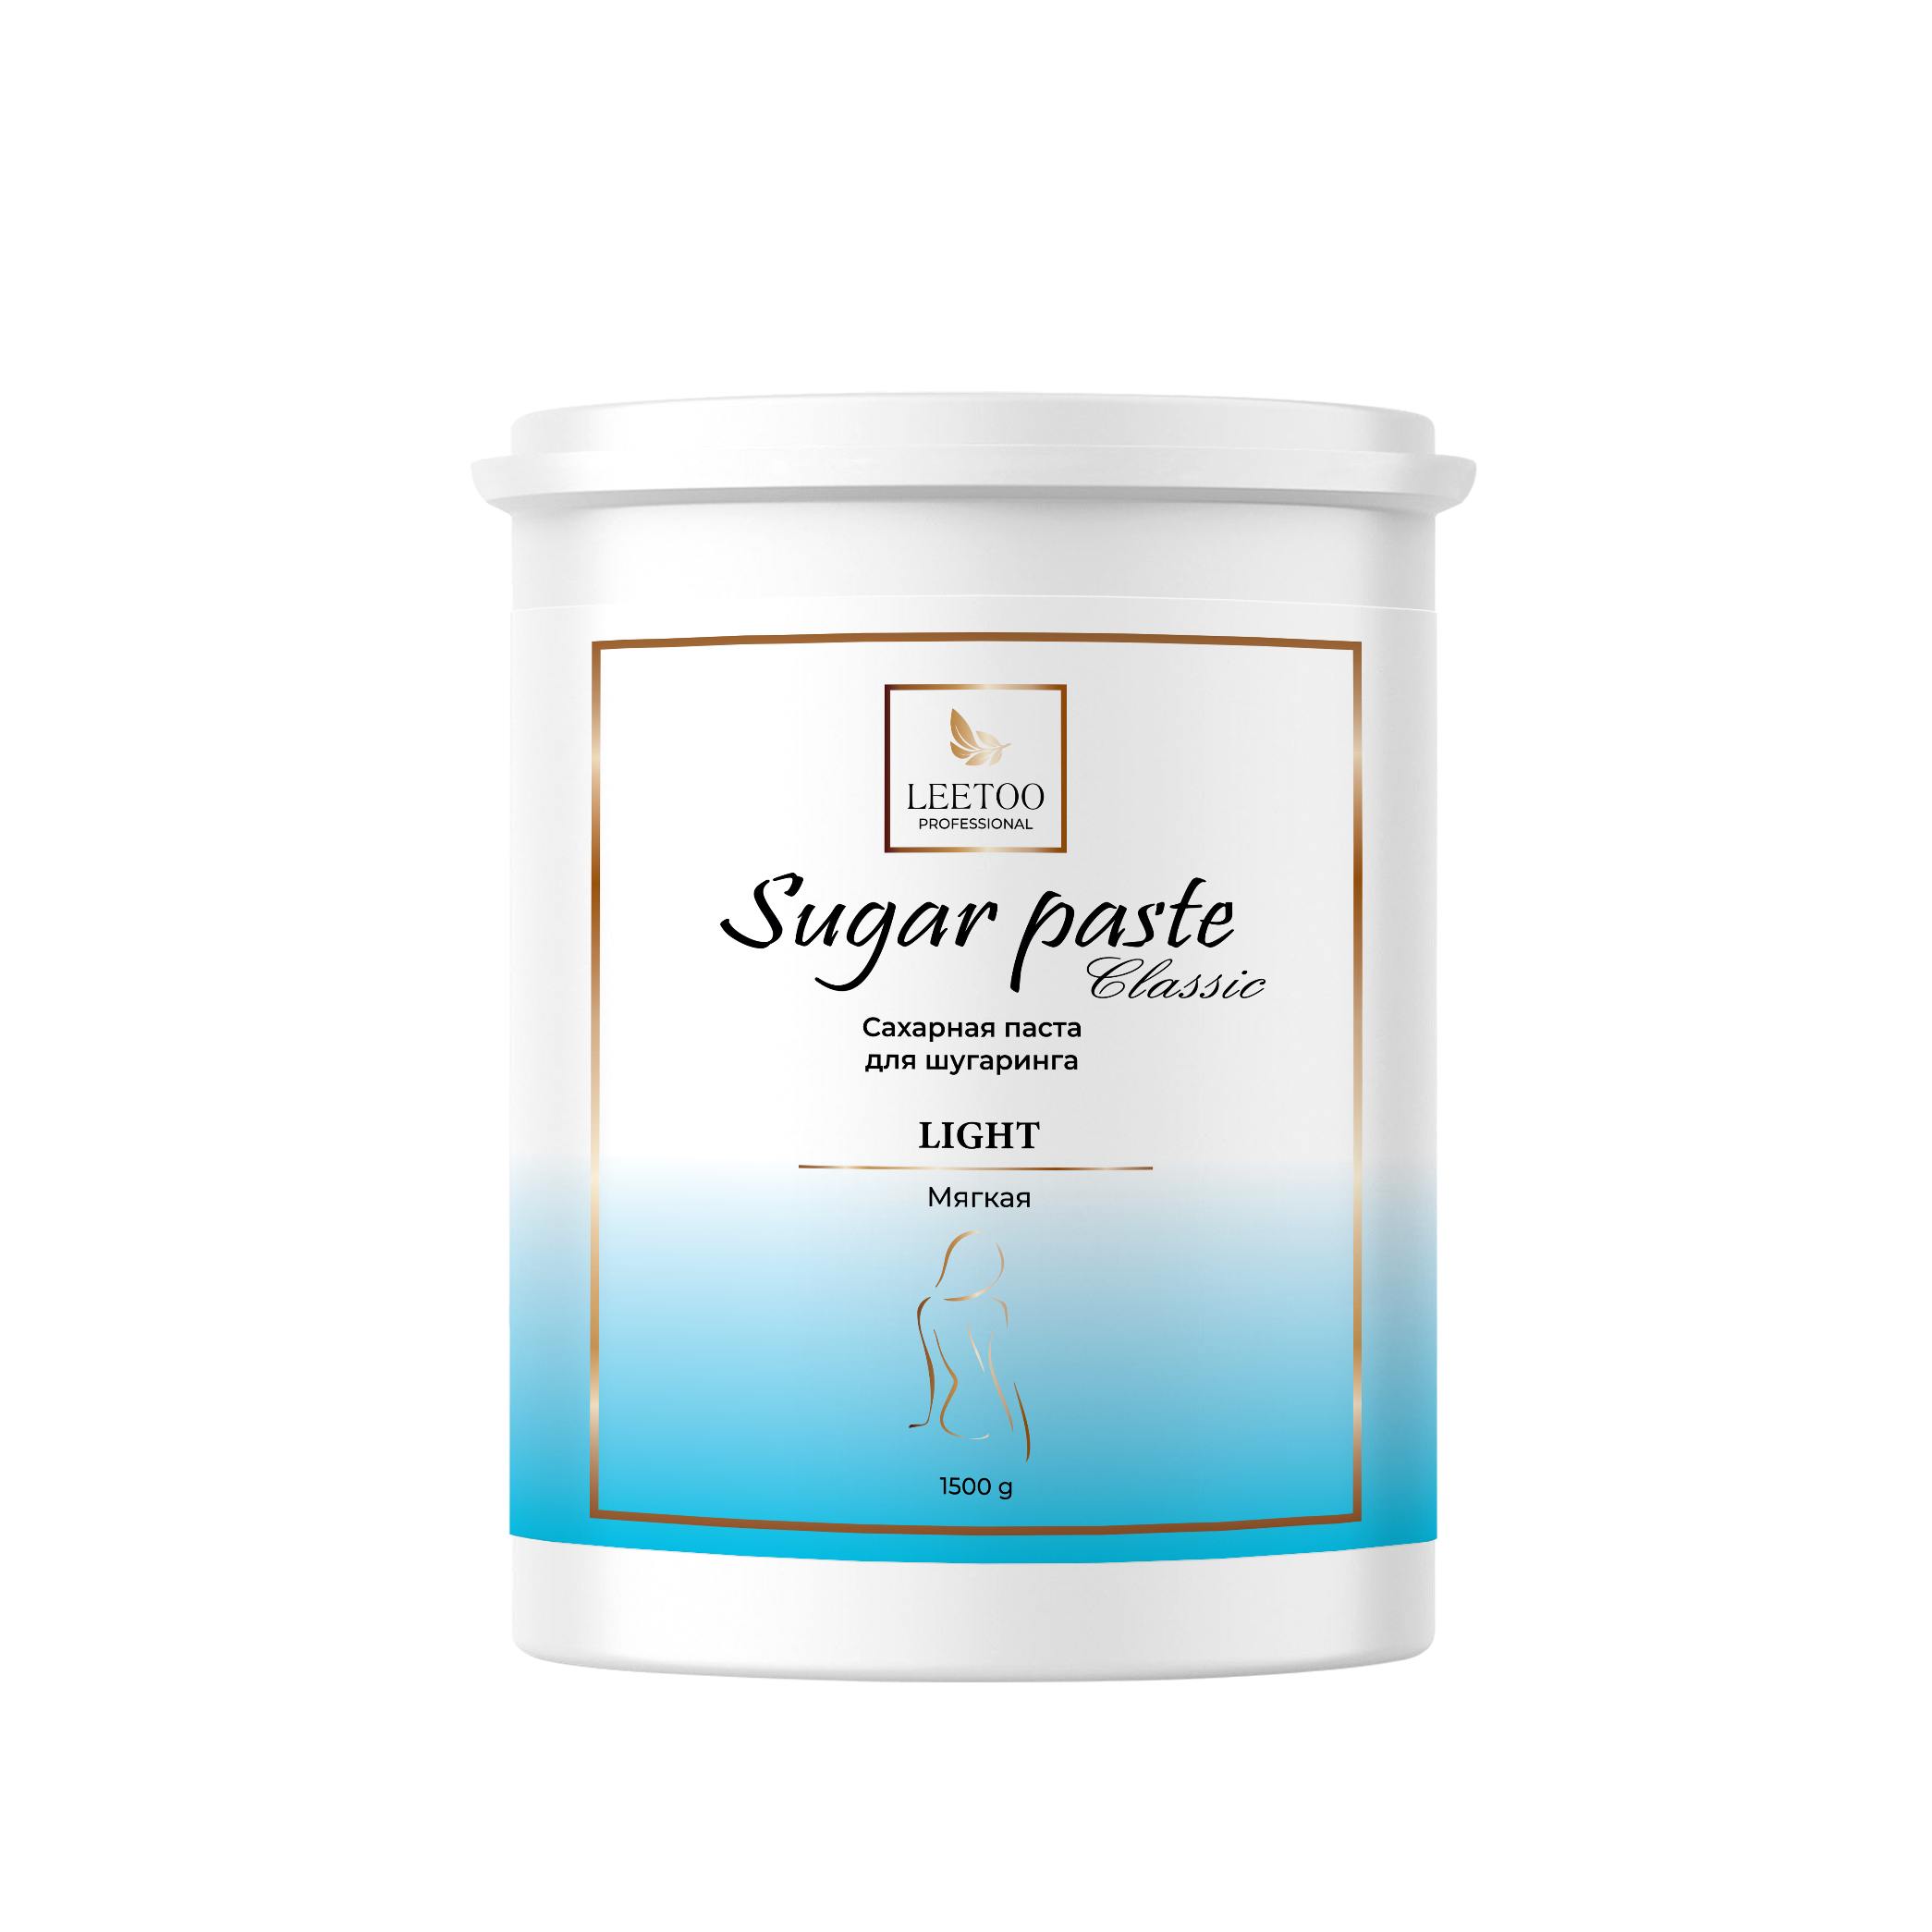 Сахарная паста для шугаринга LEETOO CLASSIC LIGHT Мягкая 1500 г.